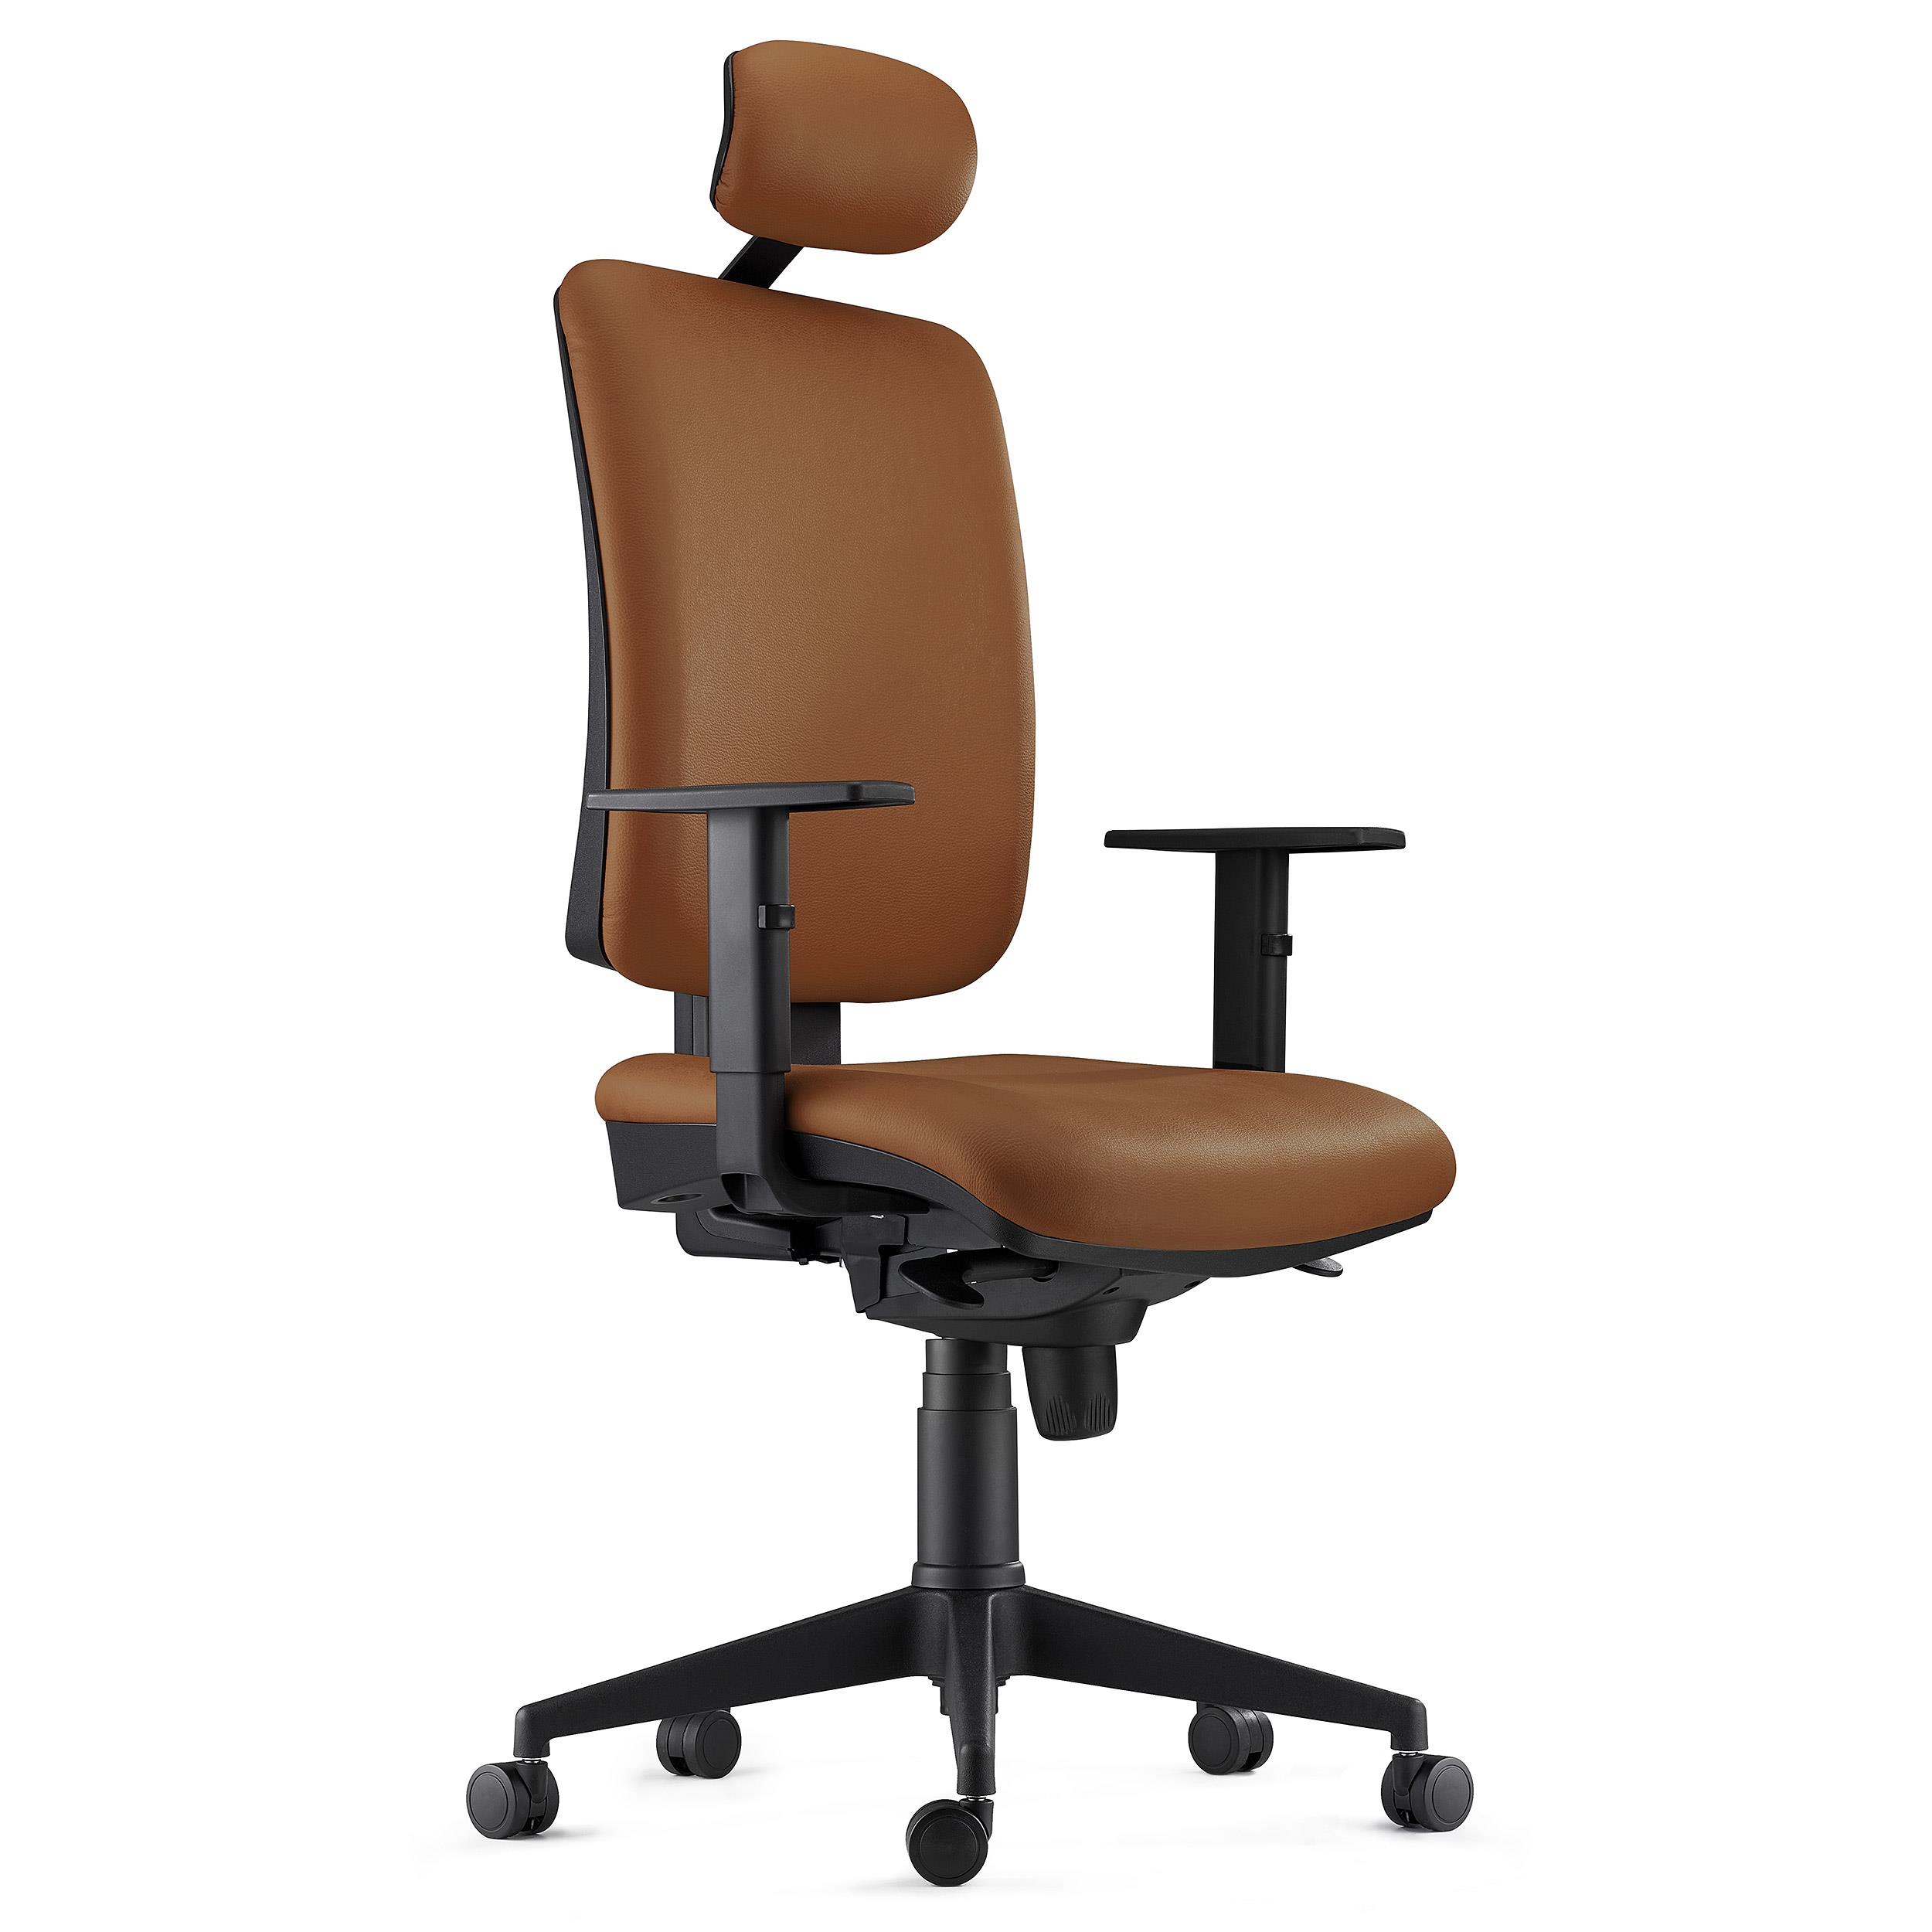 Chaise ergonomique PIERO, Appui-tête et Accoudoirs Ajustables, en Cuir Authentique Marron